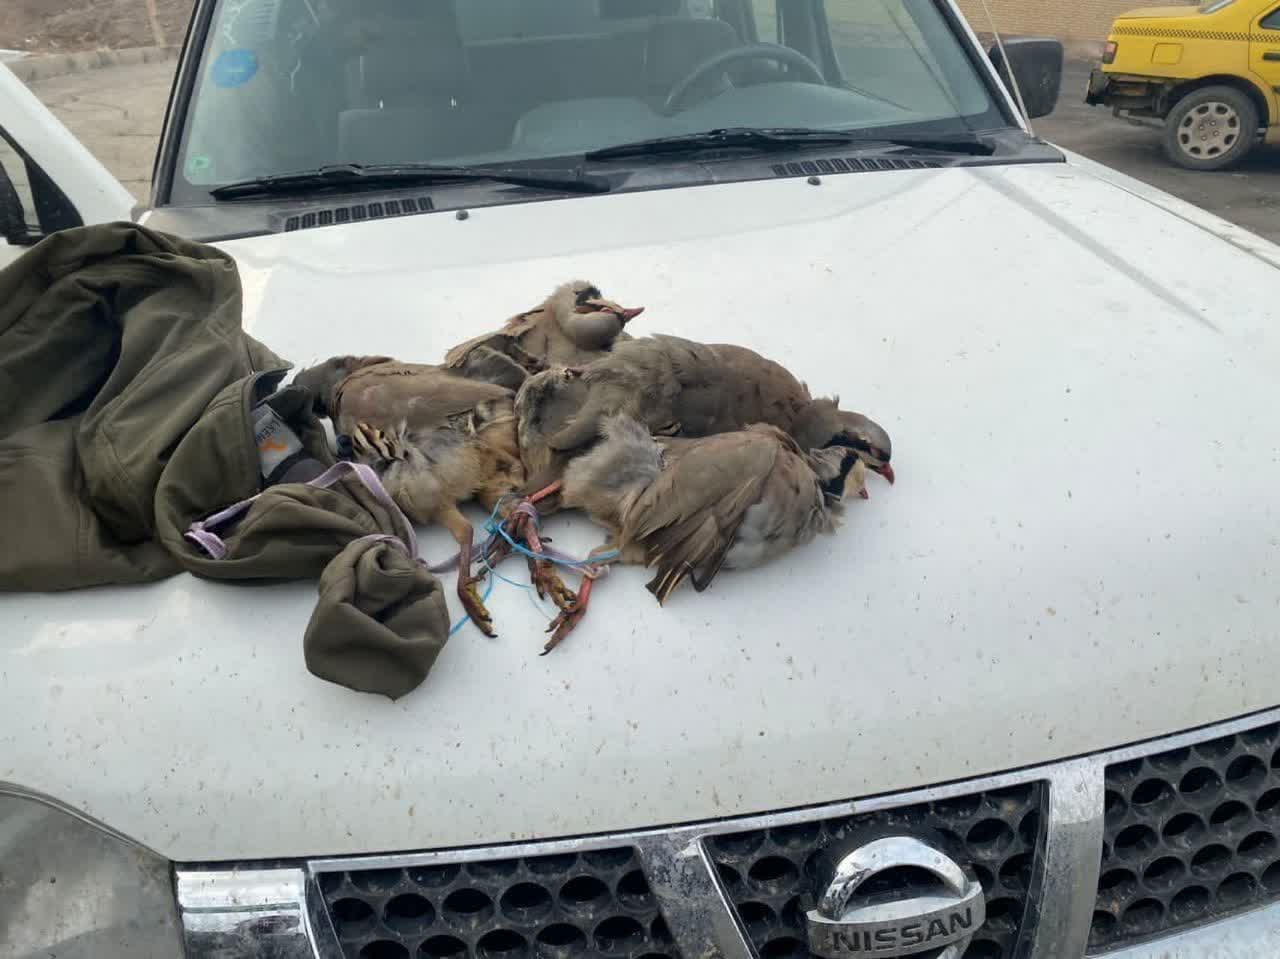 شکارچیان غیر مجاز در منطقه ولیان ساوجبلاغ دستگیر شدند